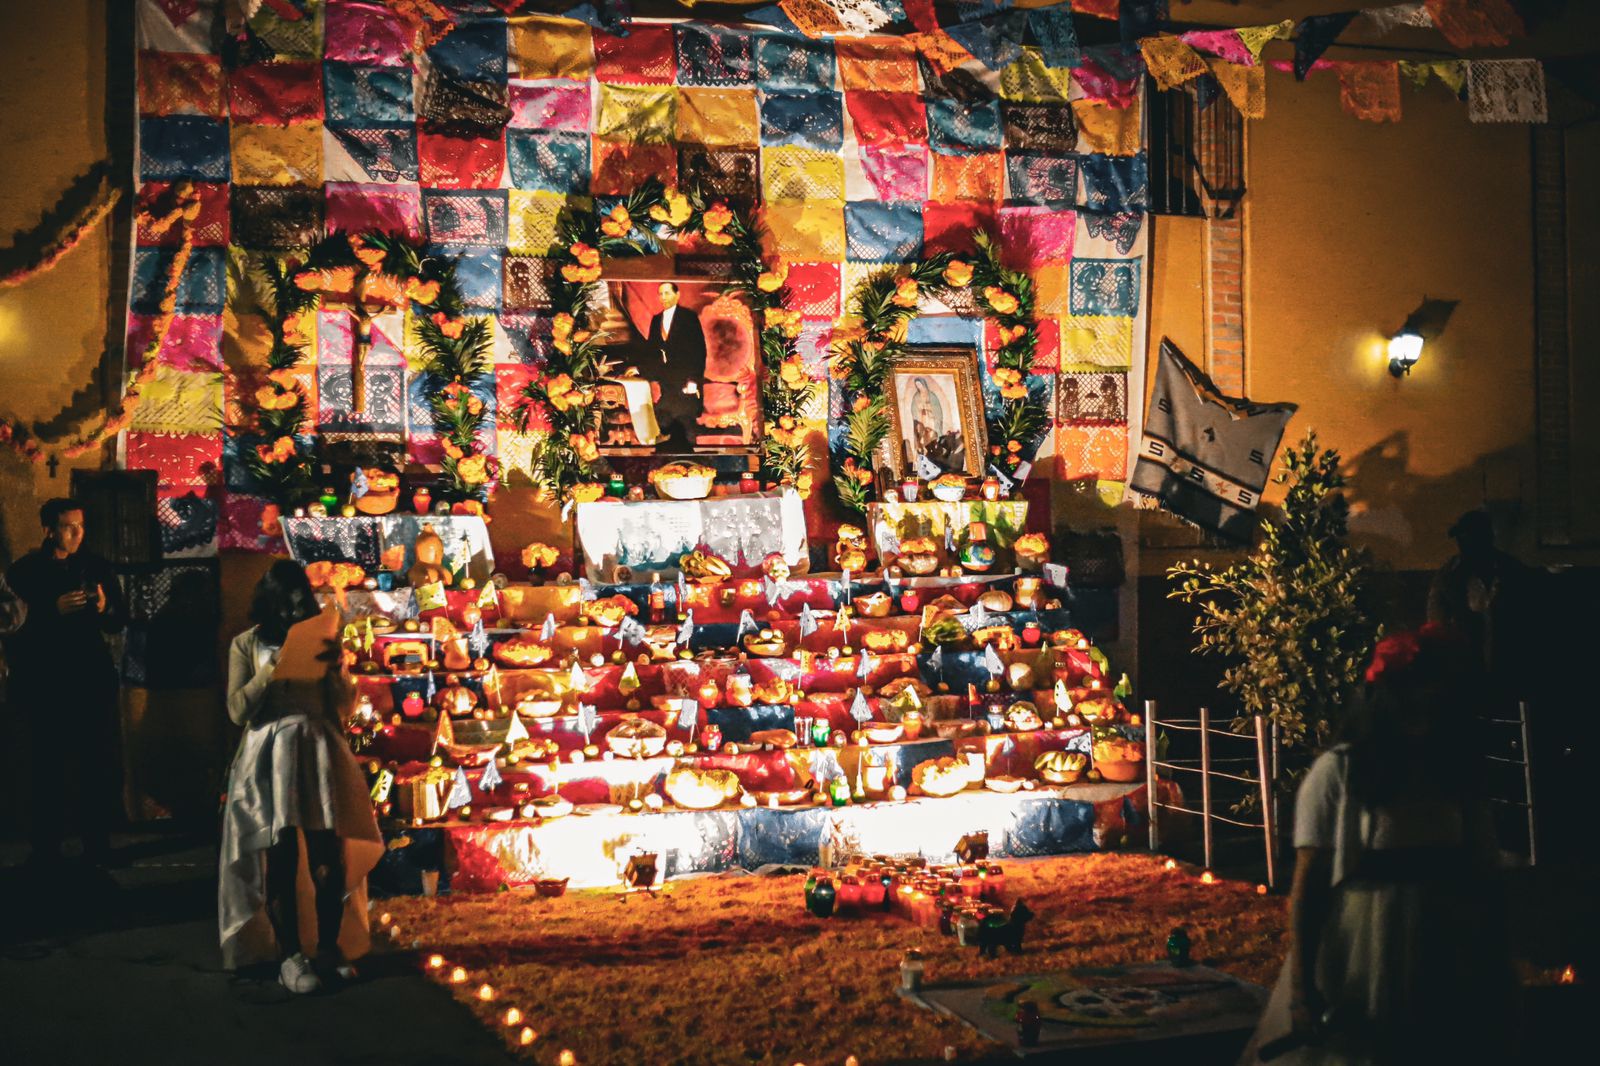 Las festividades de día de muertos en el municipio de Villa de Reyes se realizaron con saldo blanco, sin incidentes mayores